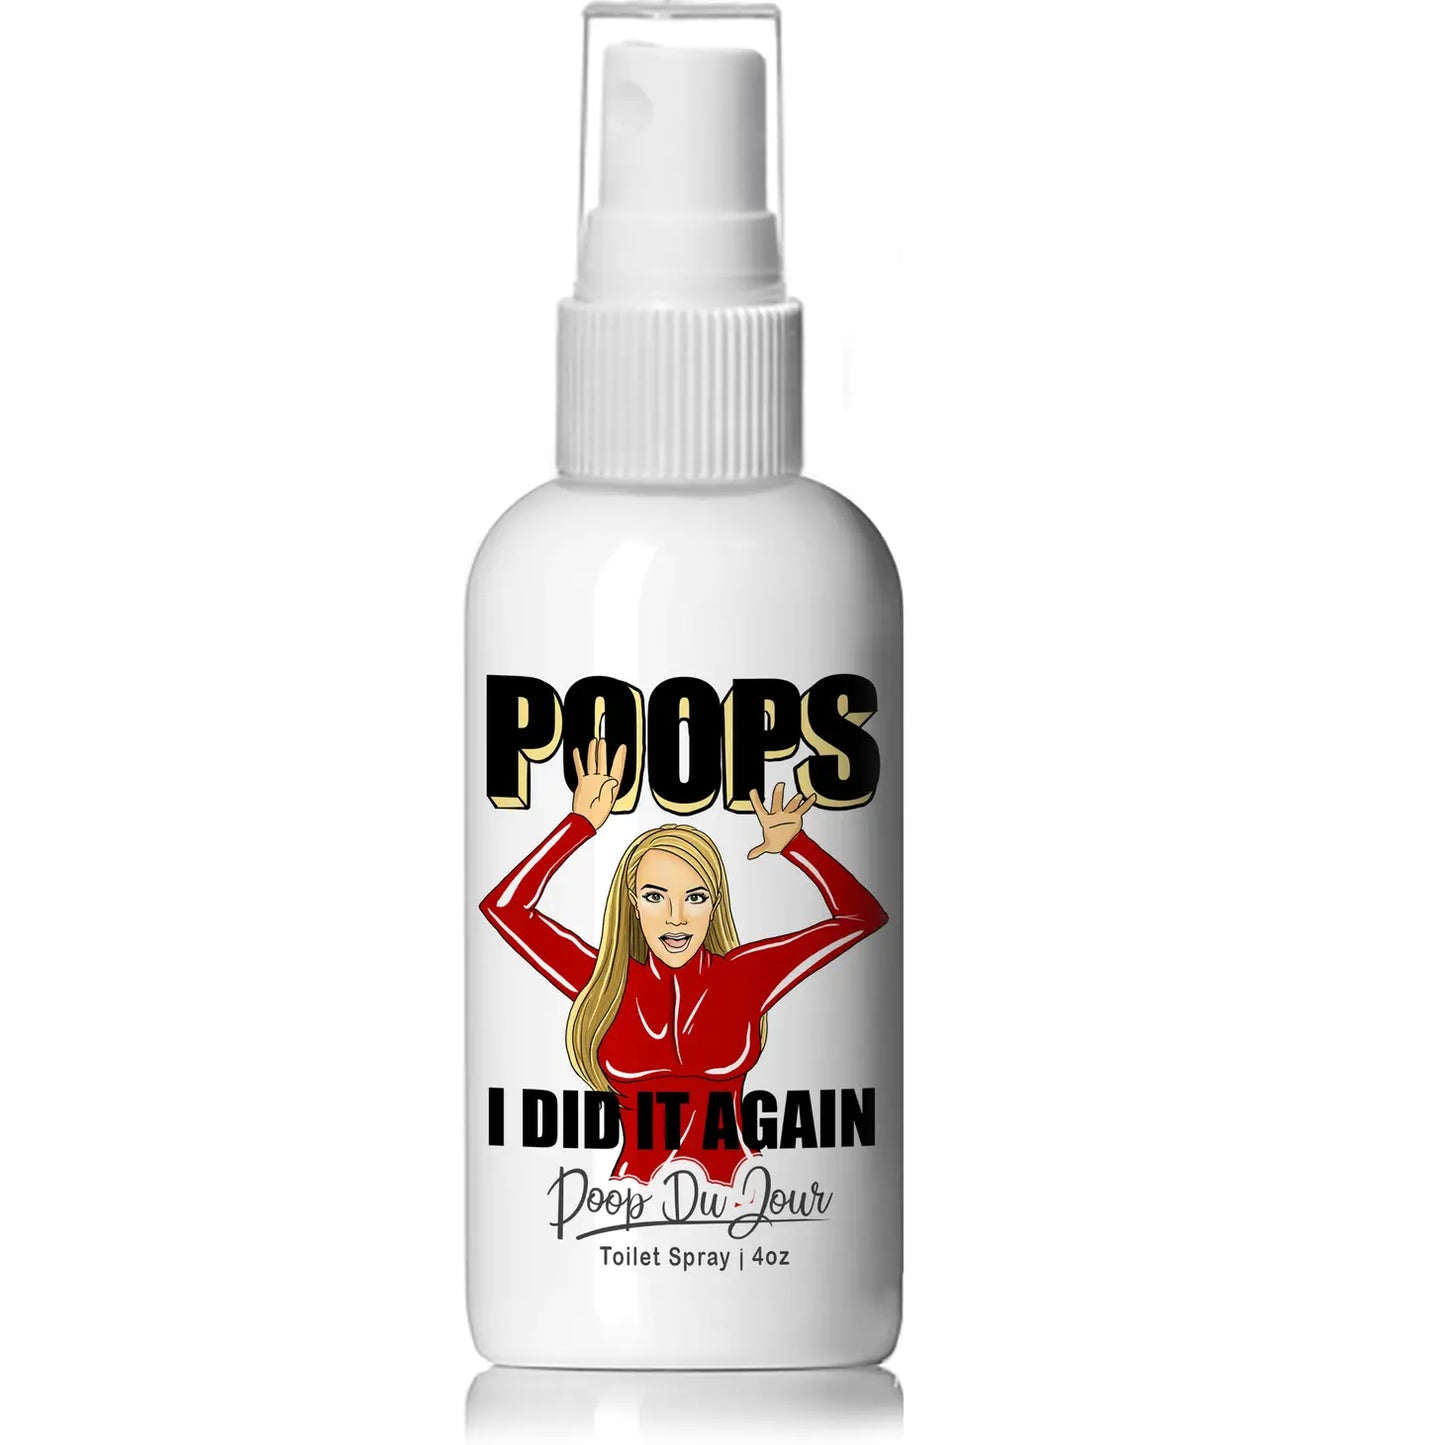 Poops I Did It Again - Britney Spears "Poop Du Jour" Toilet Spray